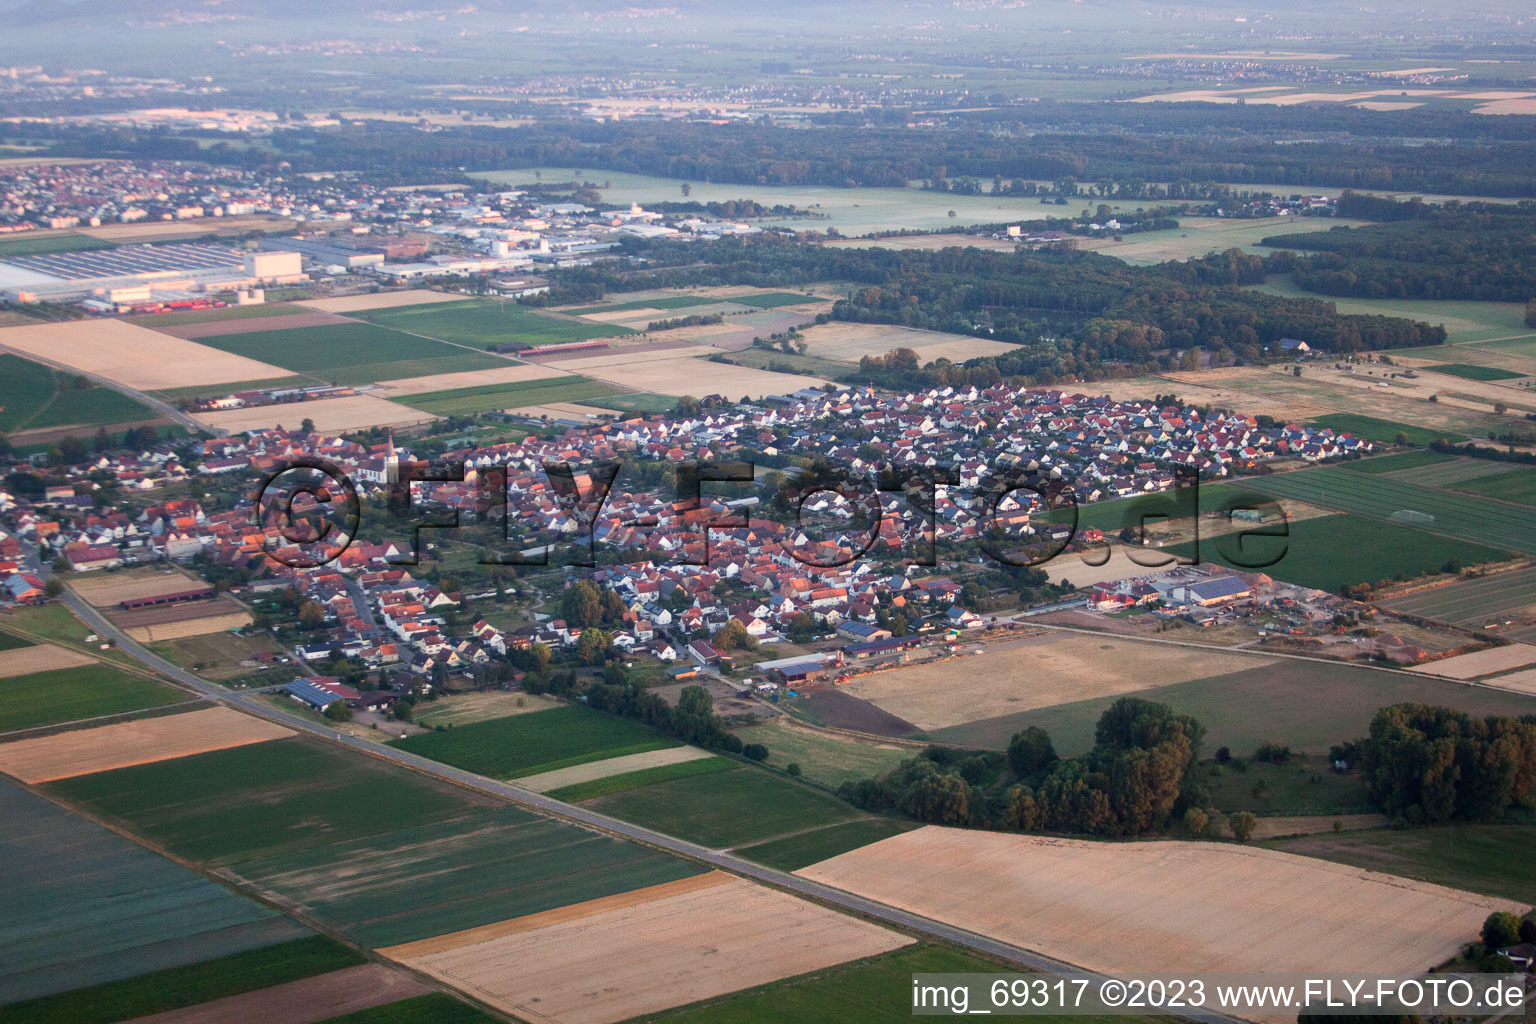 Ottersheim in Ottersheim bei Landau im Bundesland Rheinland-Pfalz, Deutschland von einer Drohne aus